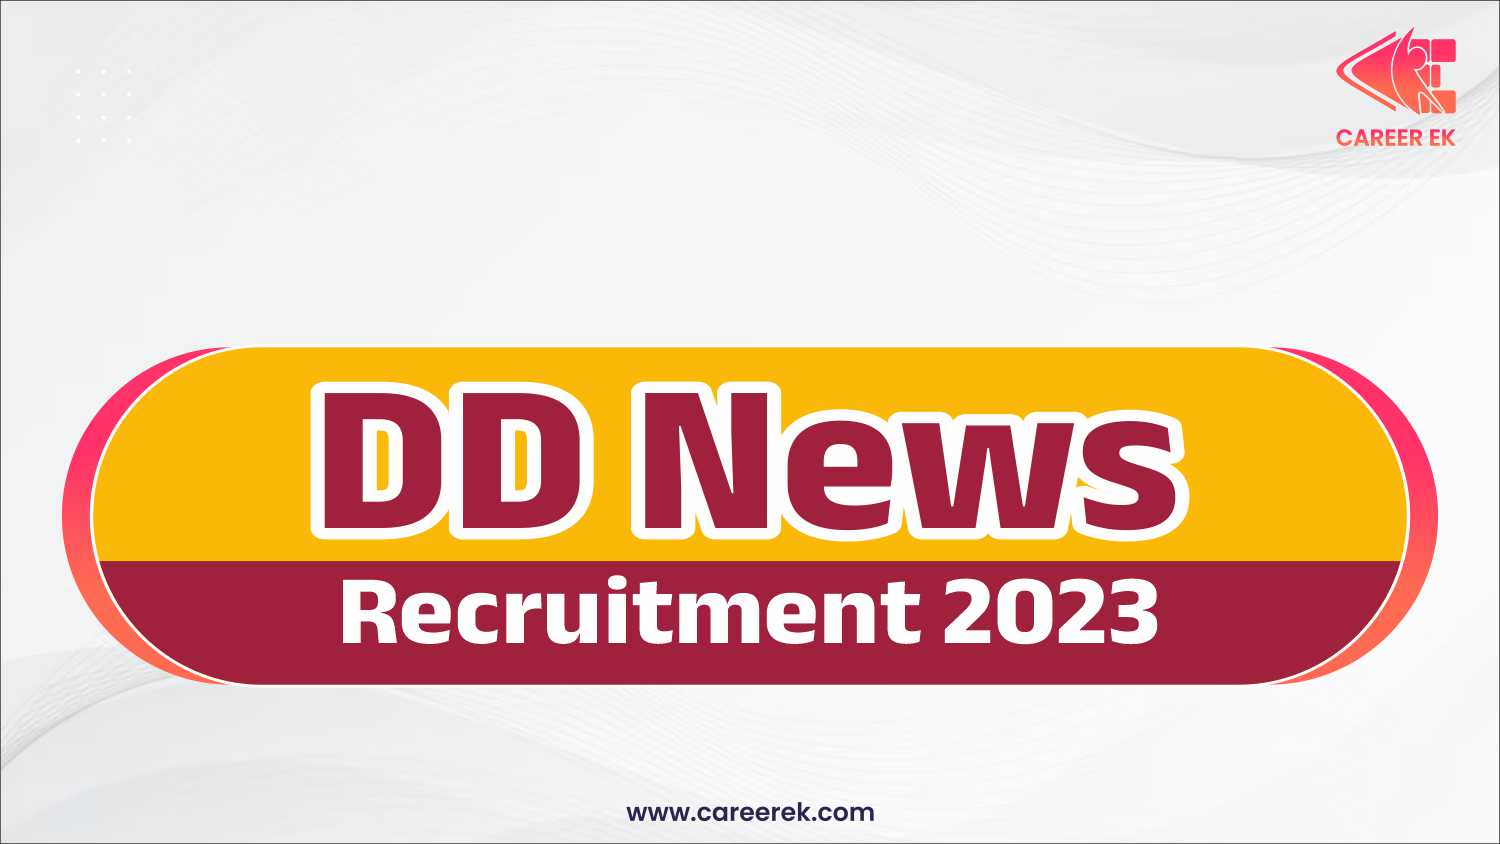 DD News Recruitment 2023